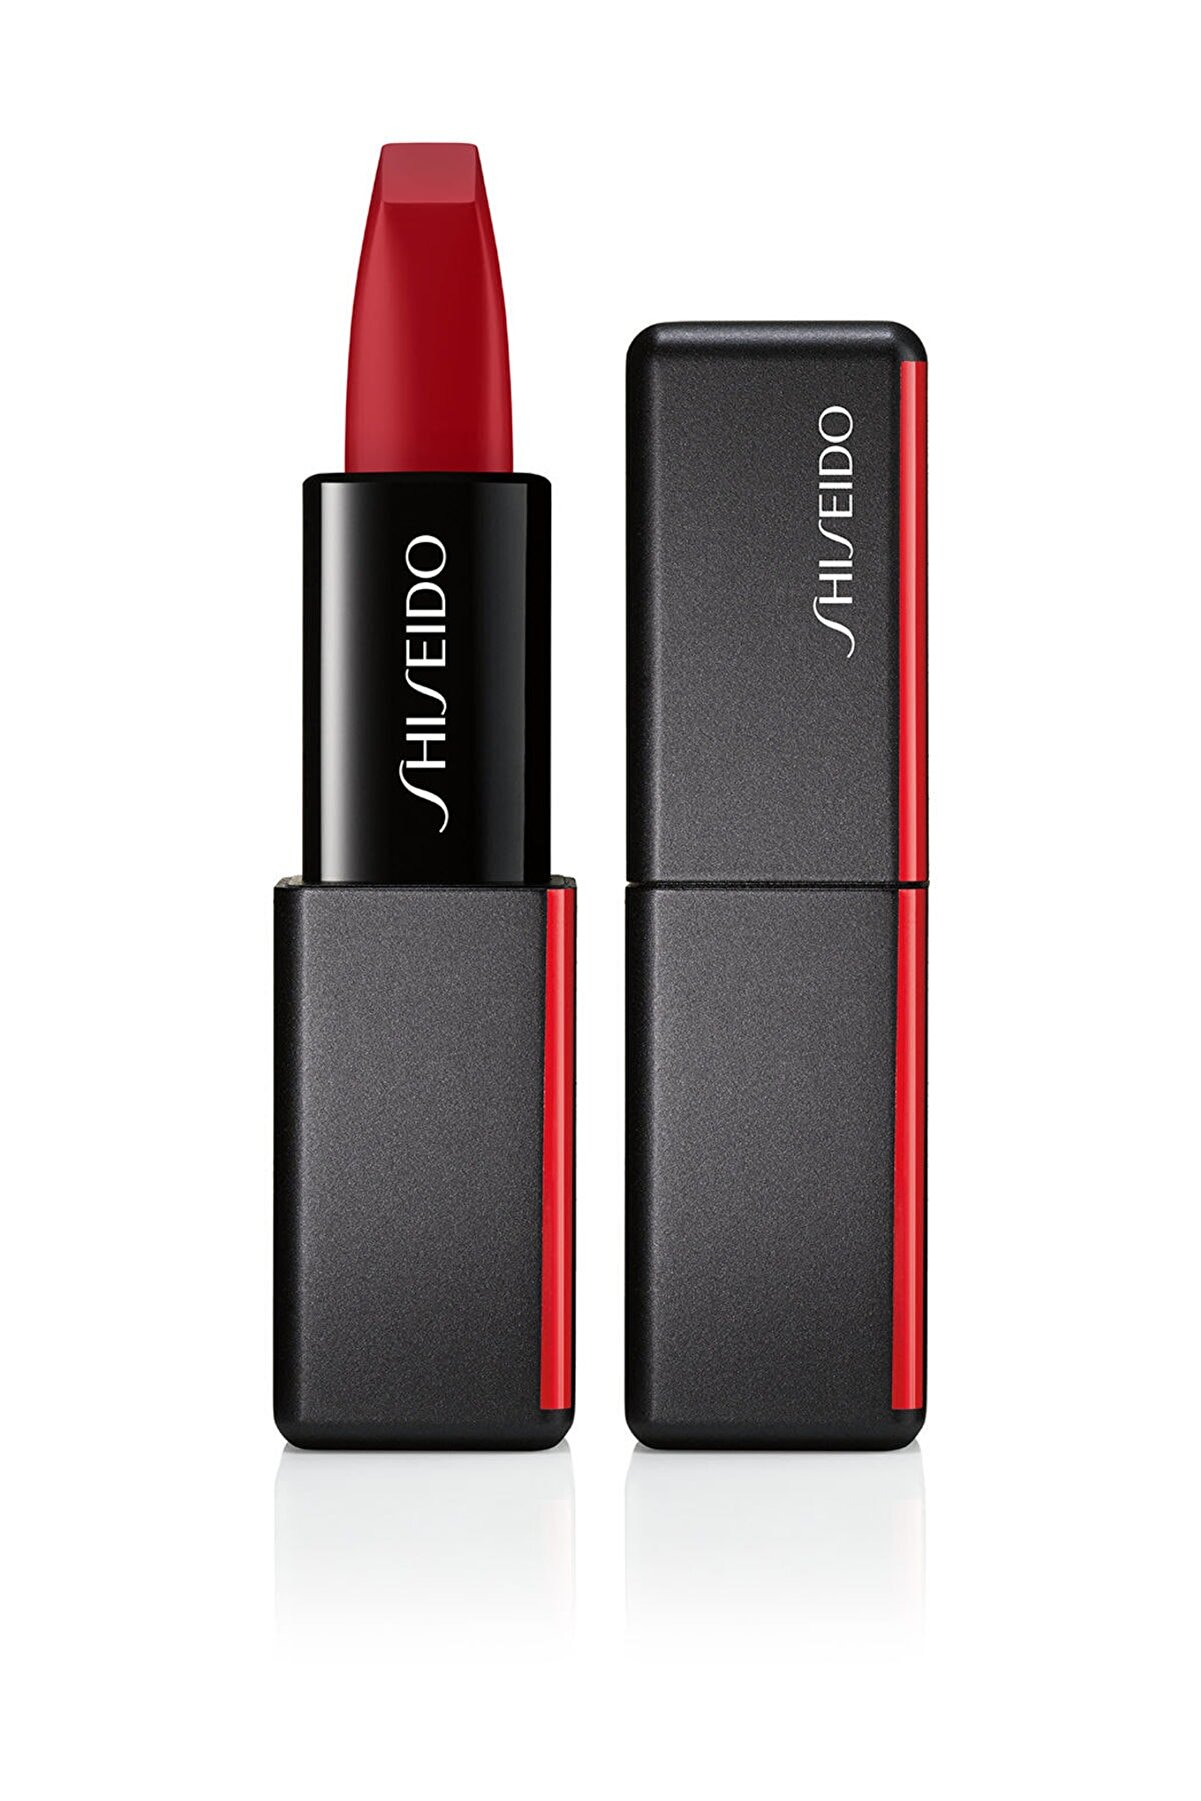 Shiseido Kalıcı Kadifemsi Mat Ruj - SMK Modernmatte Pw Lipstick 516 729238147928